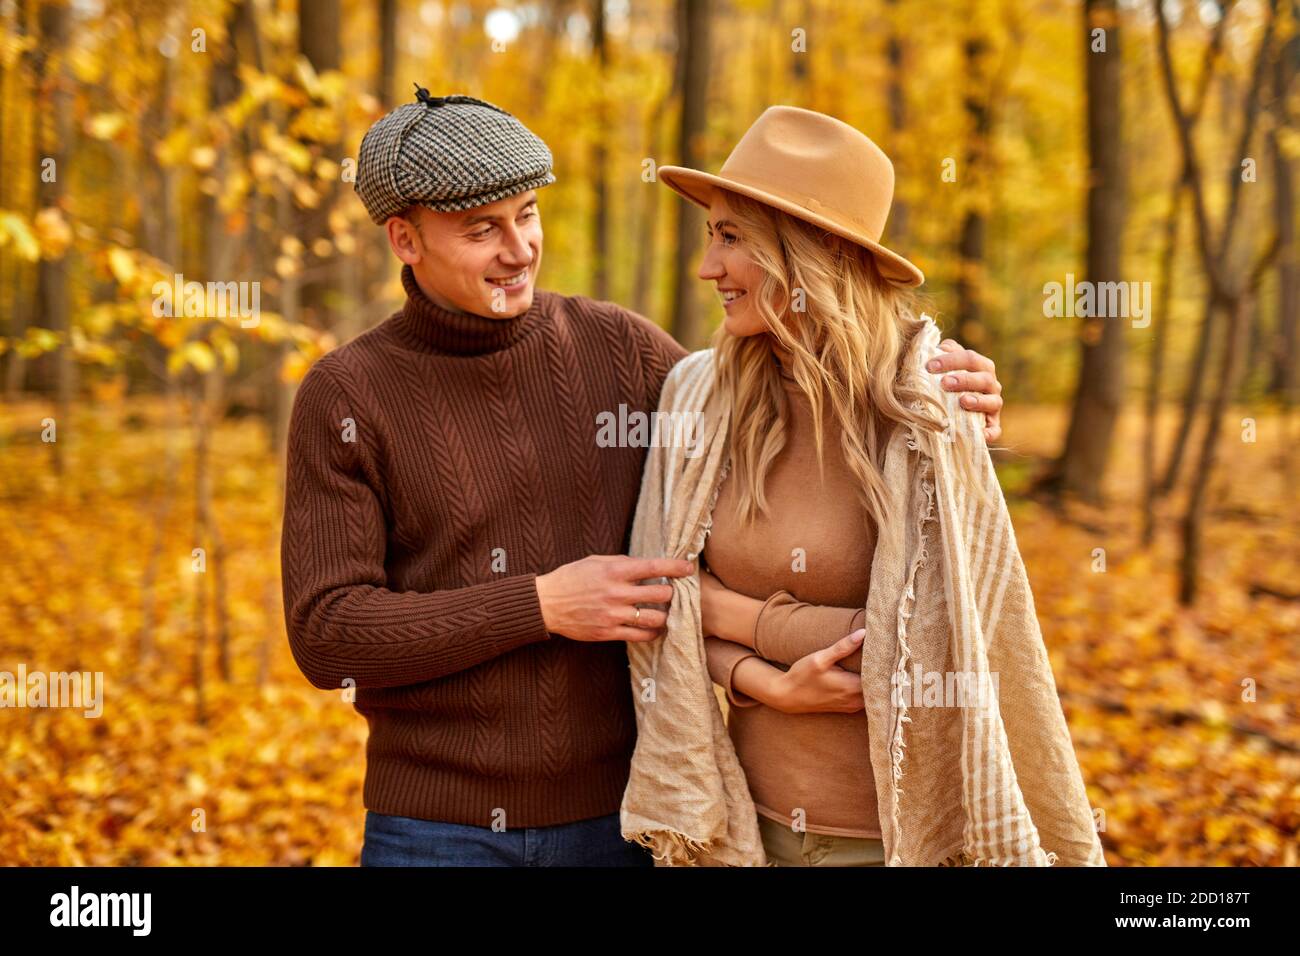 Schöner Mann ist freundlich zu seiner Frau, Liebesgeschichte im Herbst Wald oder Park, verbringen Freizeit zusammen in der Natur, posieren Stockfoto